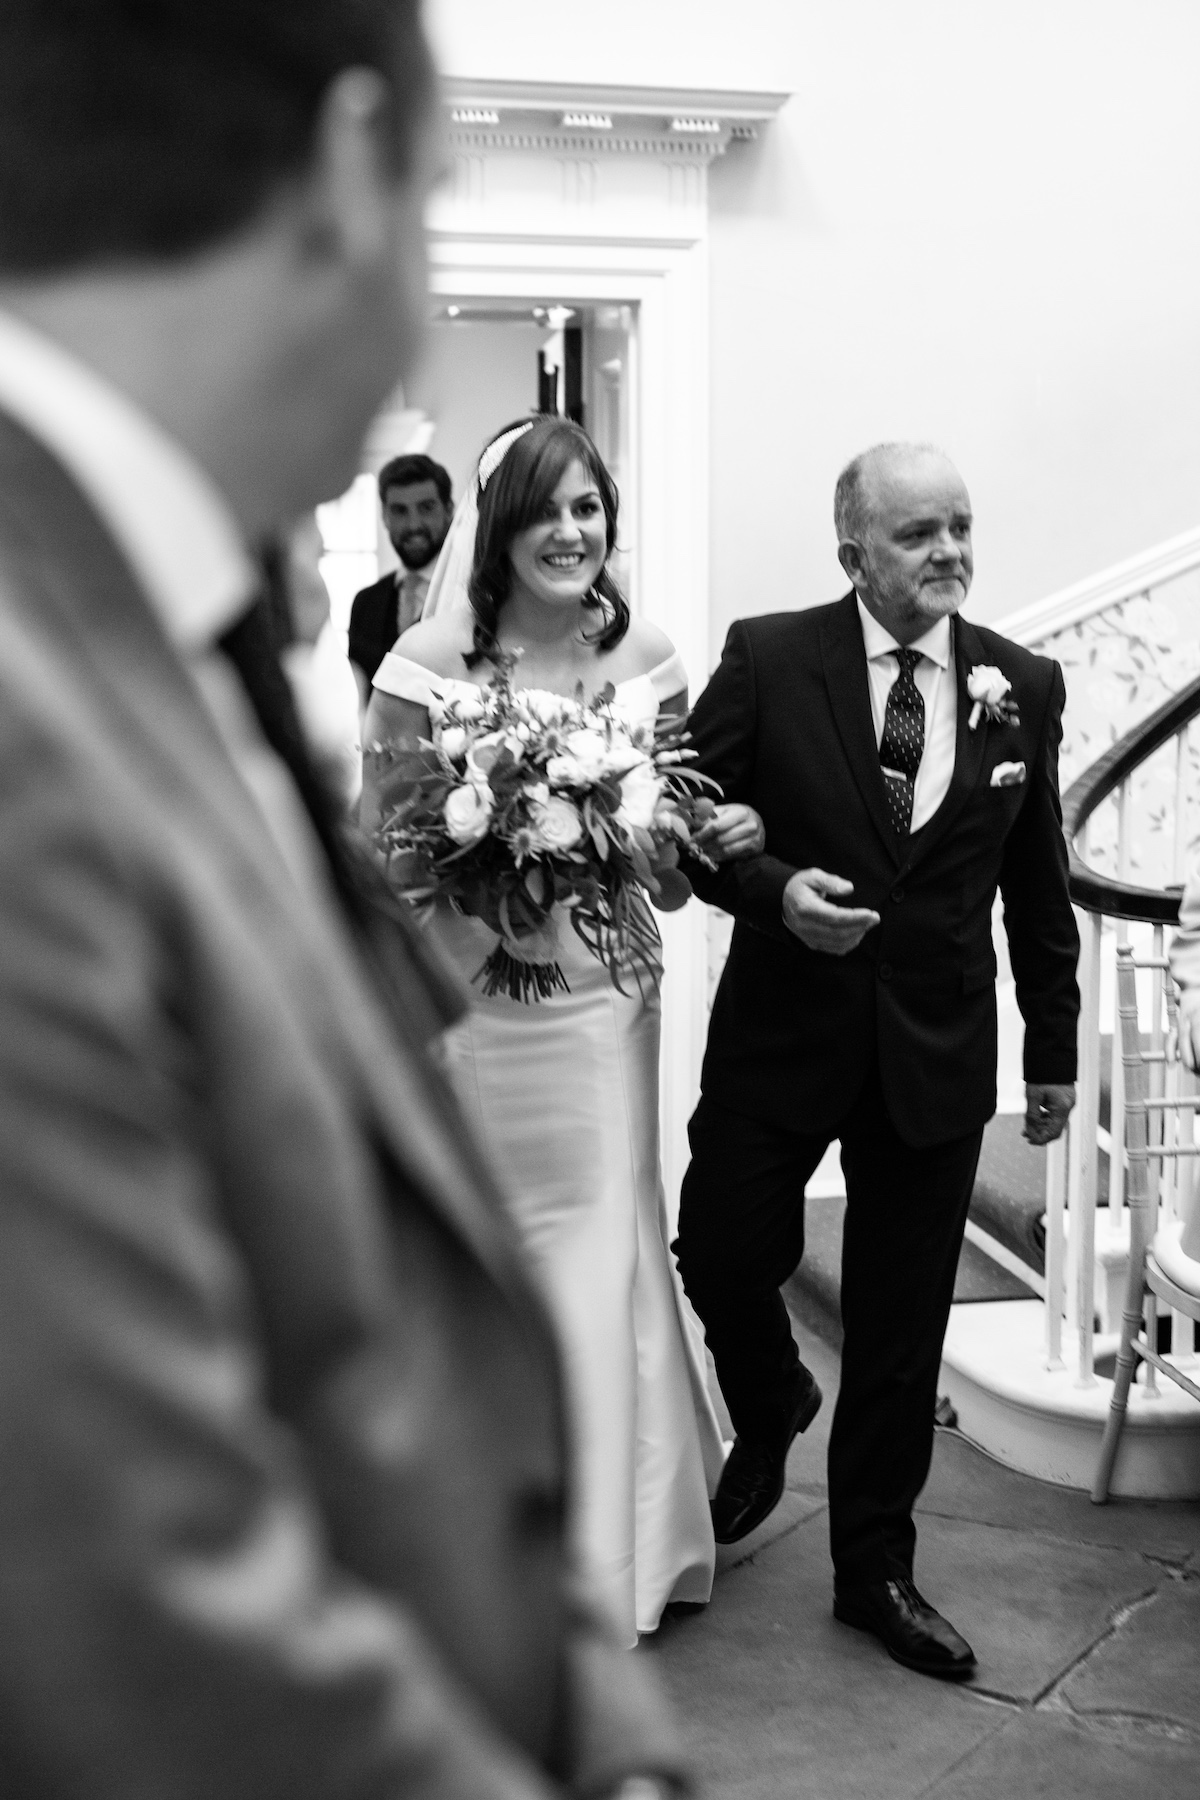 Middleton Lodge Wedding Photographer, Wedding flowers middleton lodge, wedding ceremony